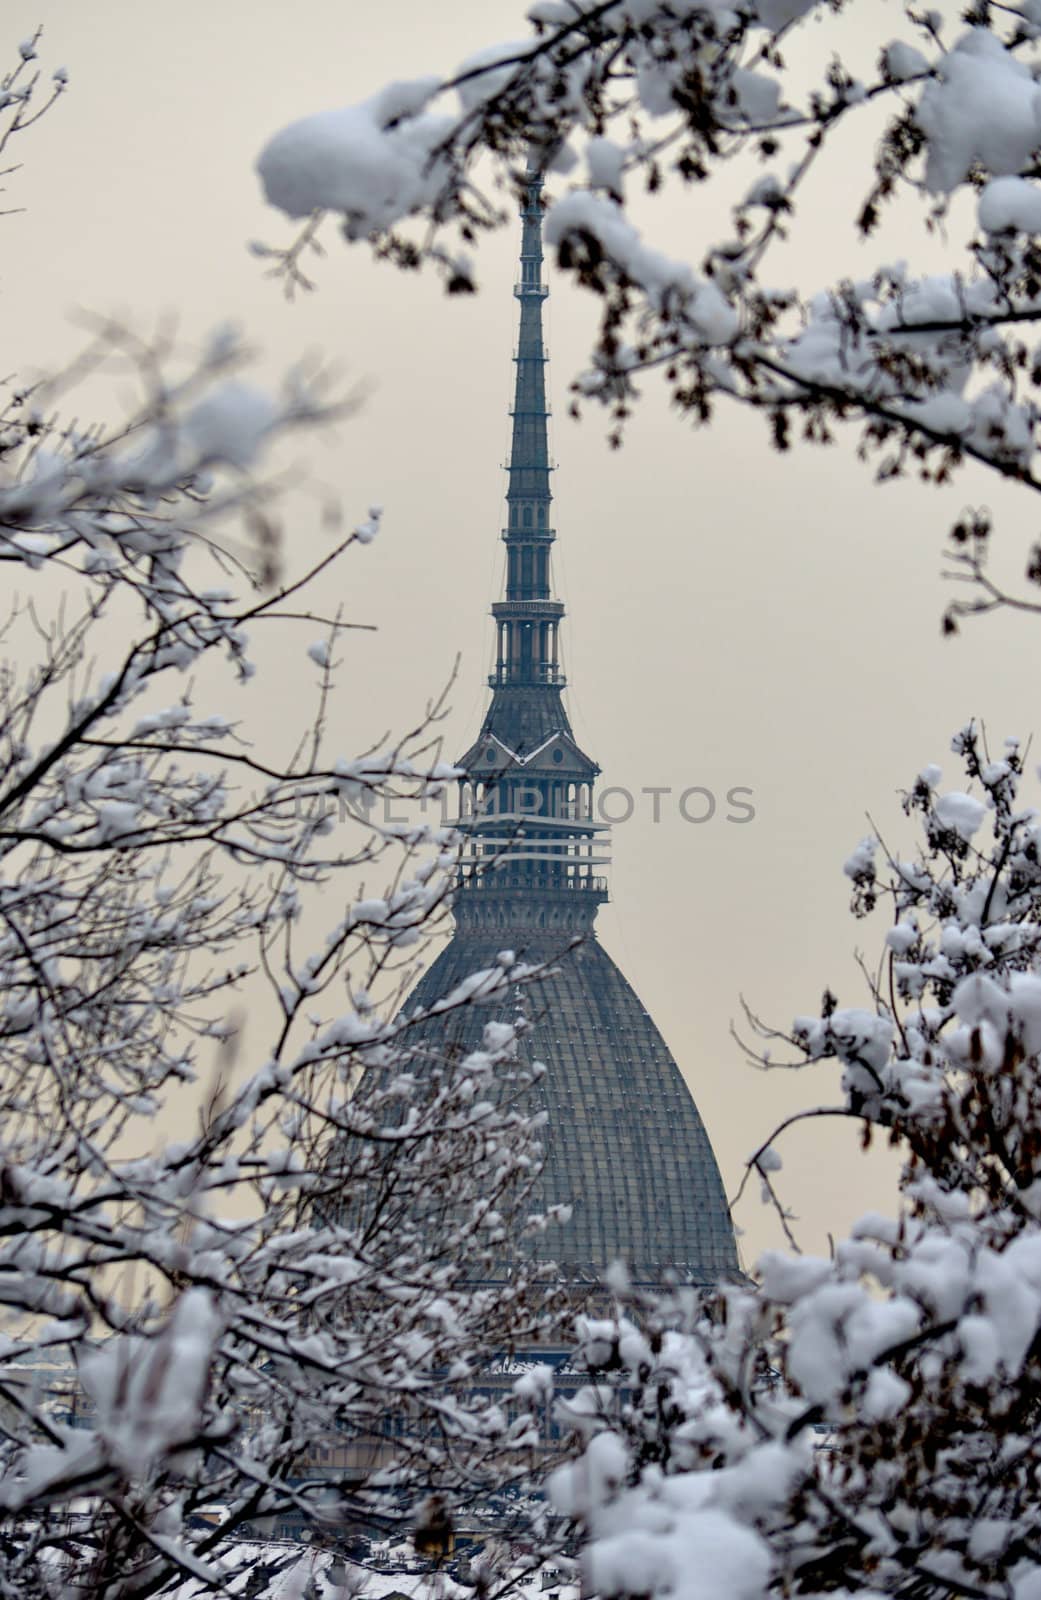 Mole Antonelliana in Turin during wintertime by artofphoto